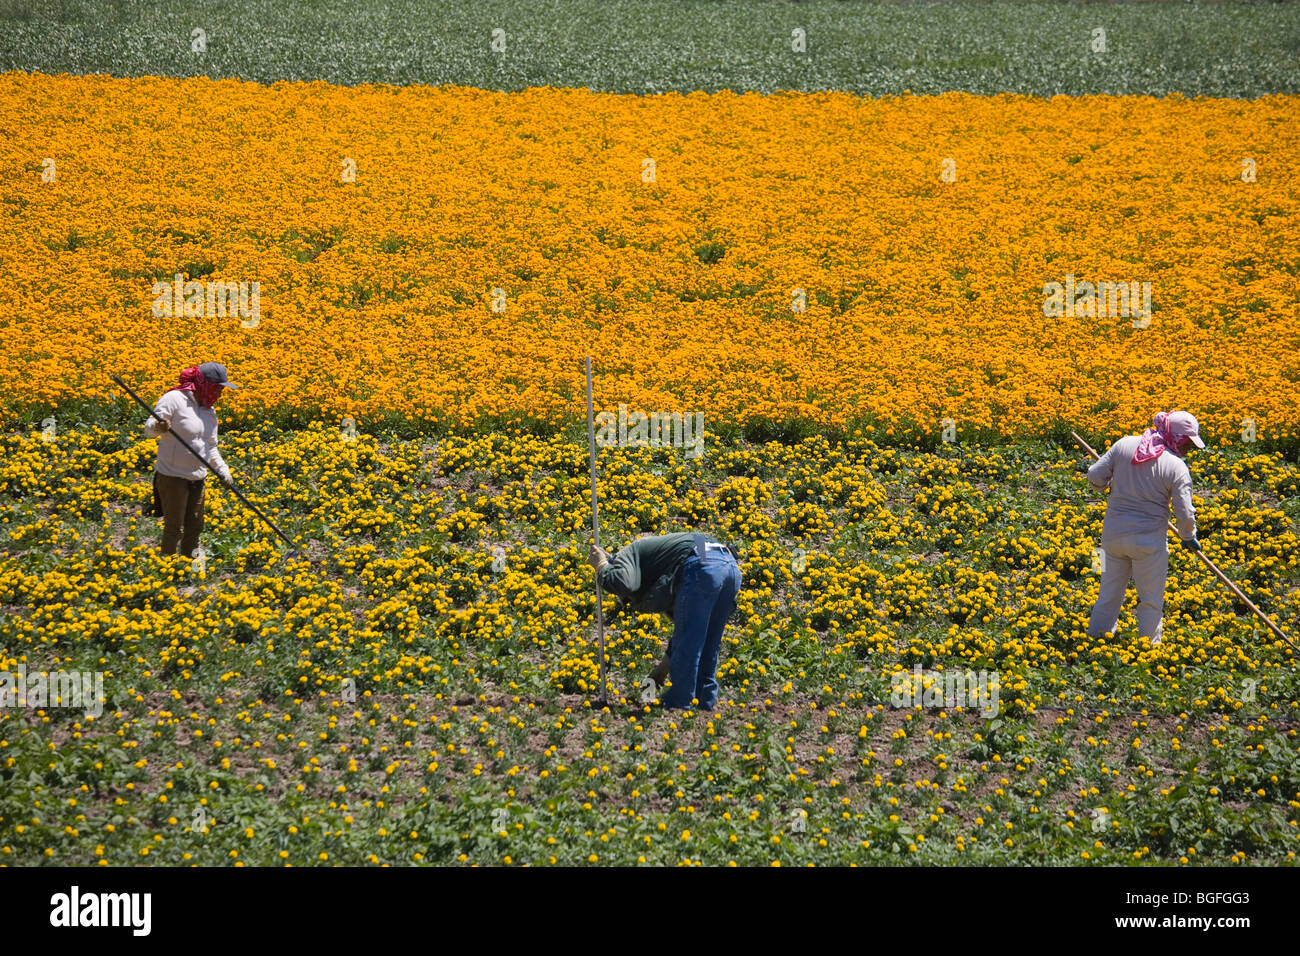 Allevamento di fiore, Lompoc, Santa Barbara County, California centrale, STATI UNITI D'AMERICA Foto Stock